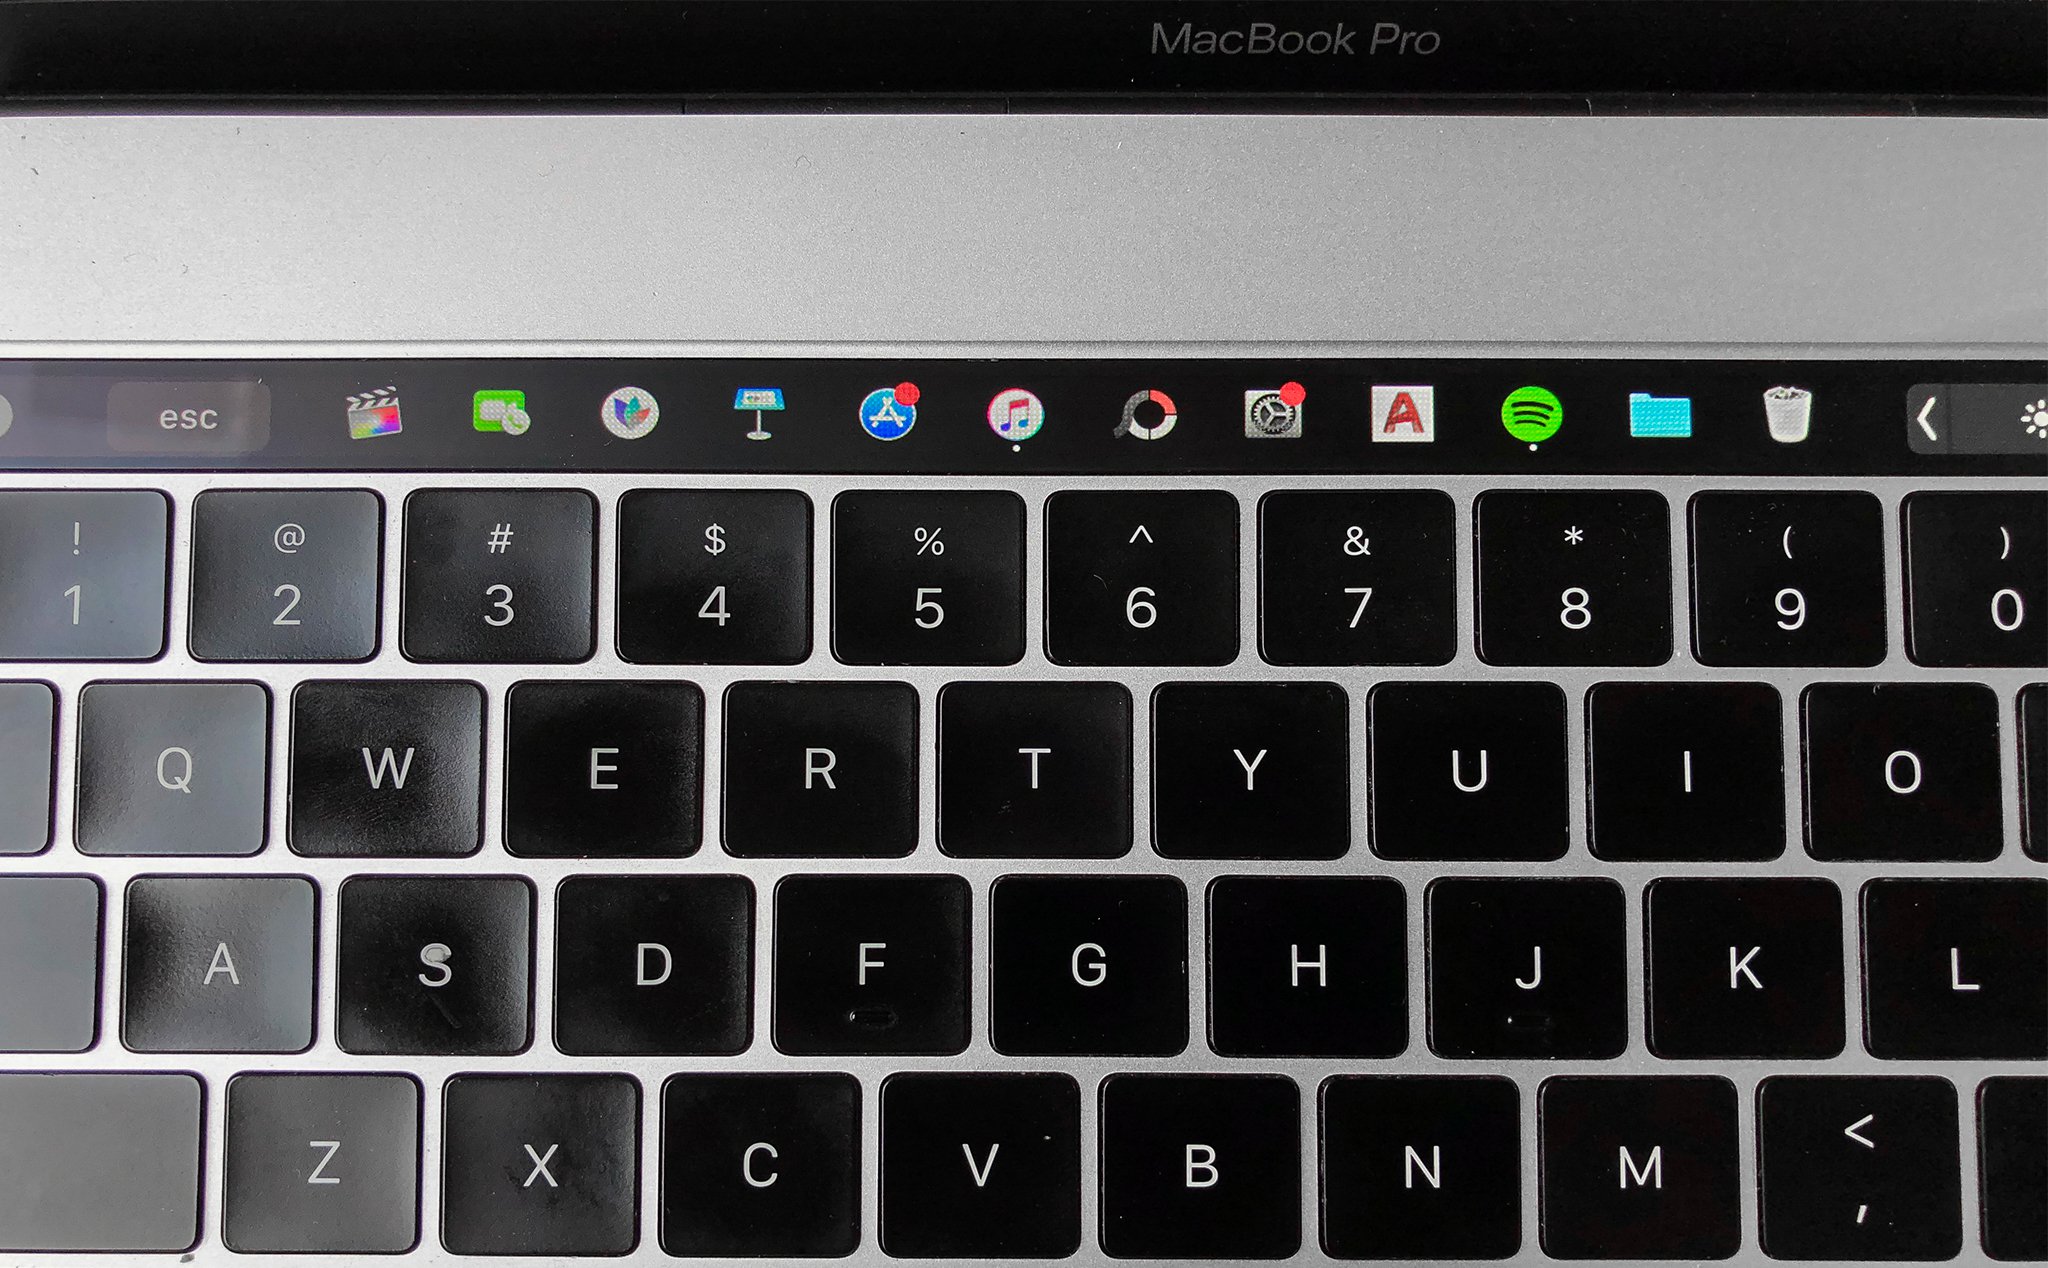 Pock: Phần mềm giúp MacBook Pro hiển thị thanh dock lên Touch Bar